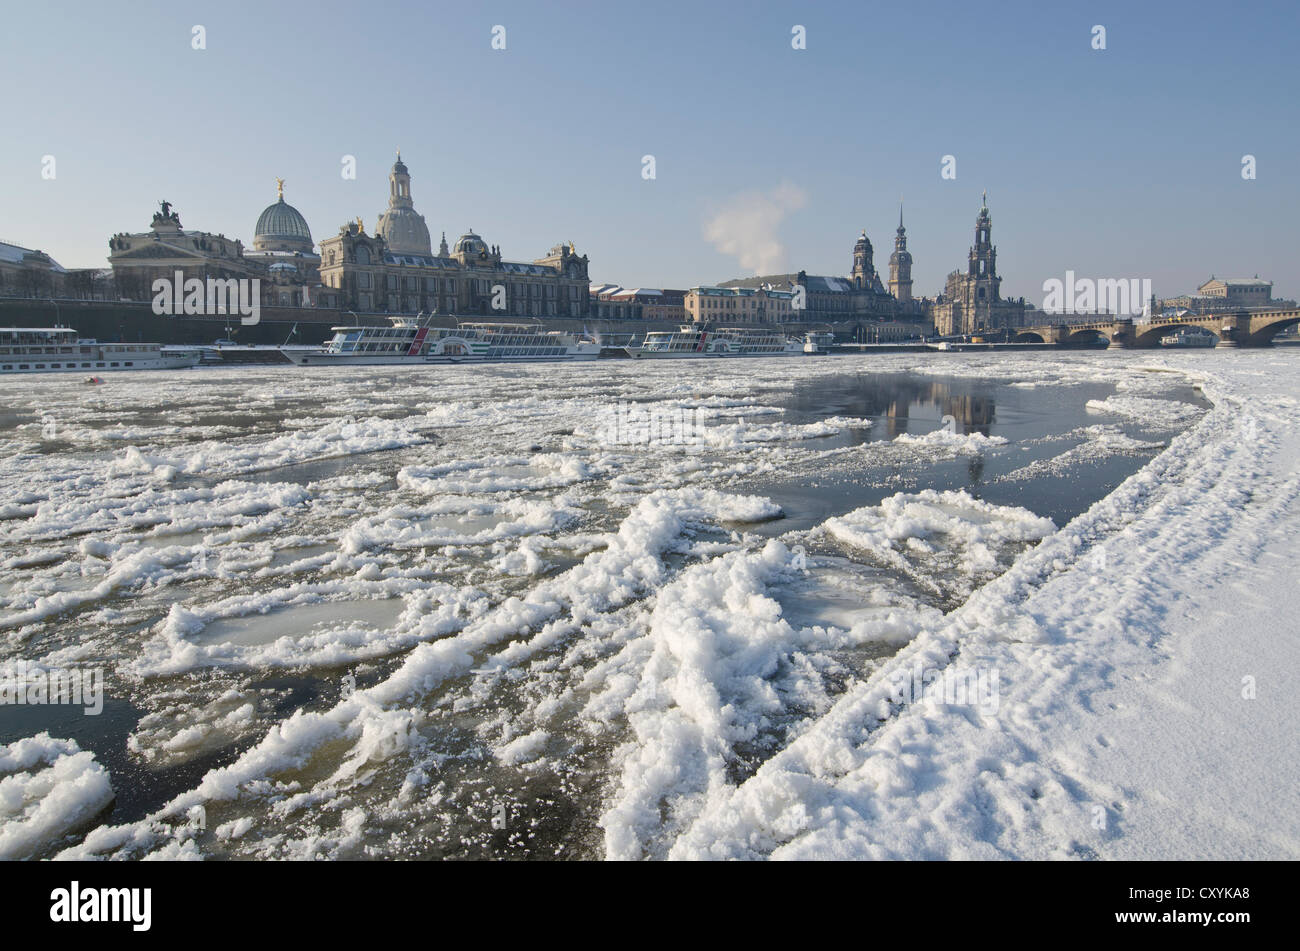 Il quasi congelate sul fiume Elba, un raro fenomeno che offre una vista spettacolare della città di Dresda, Sassonia Foto Stock